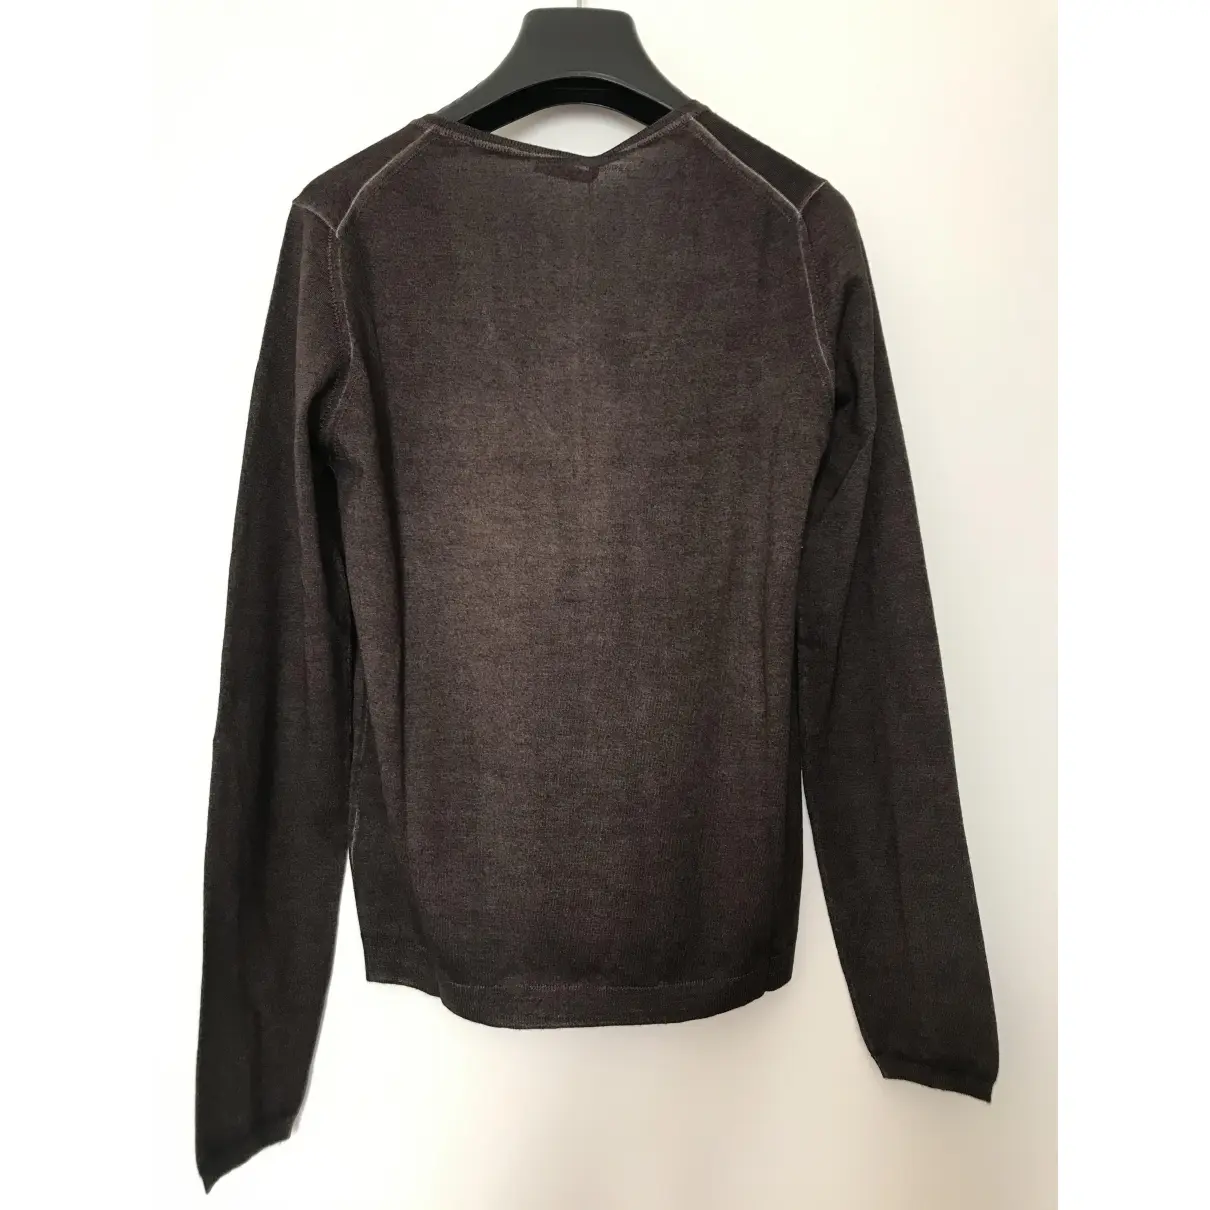 Buy Cruciani Wool jumper online